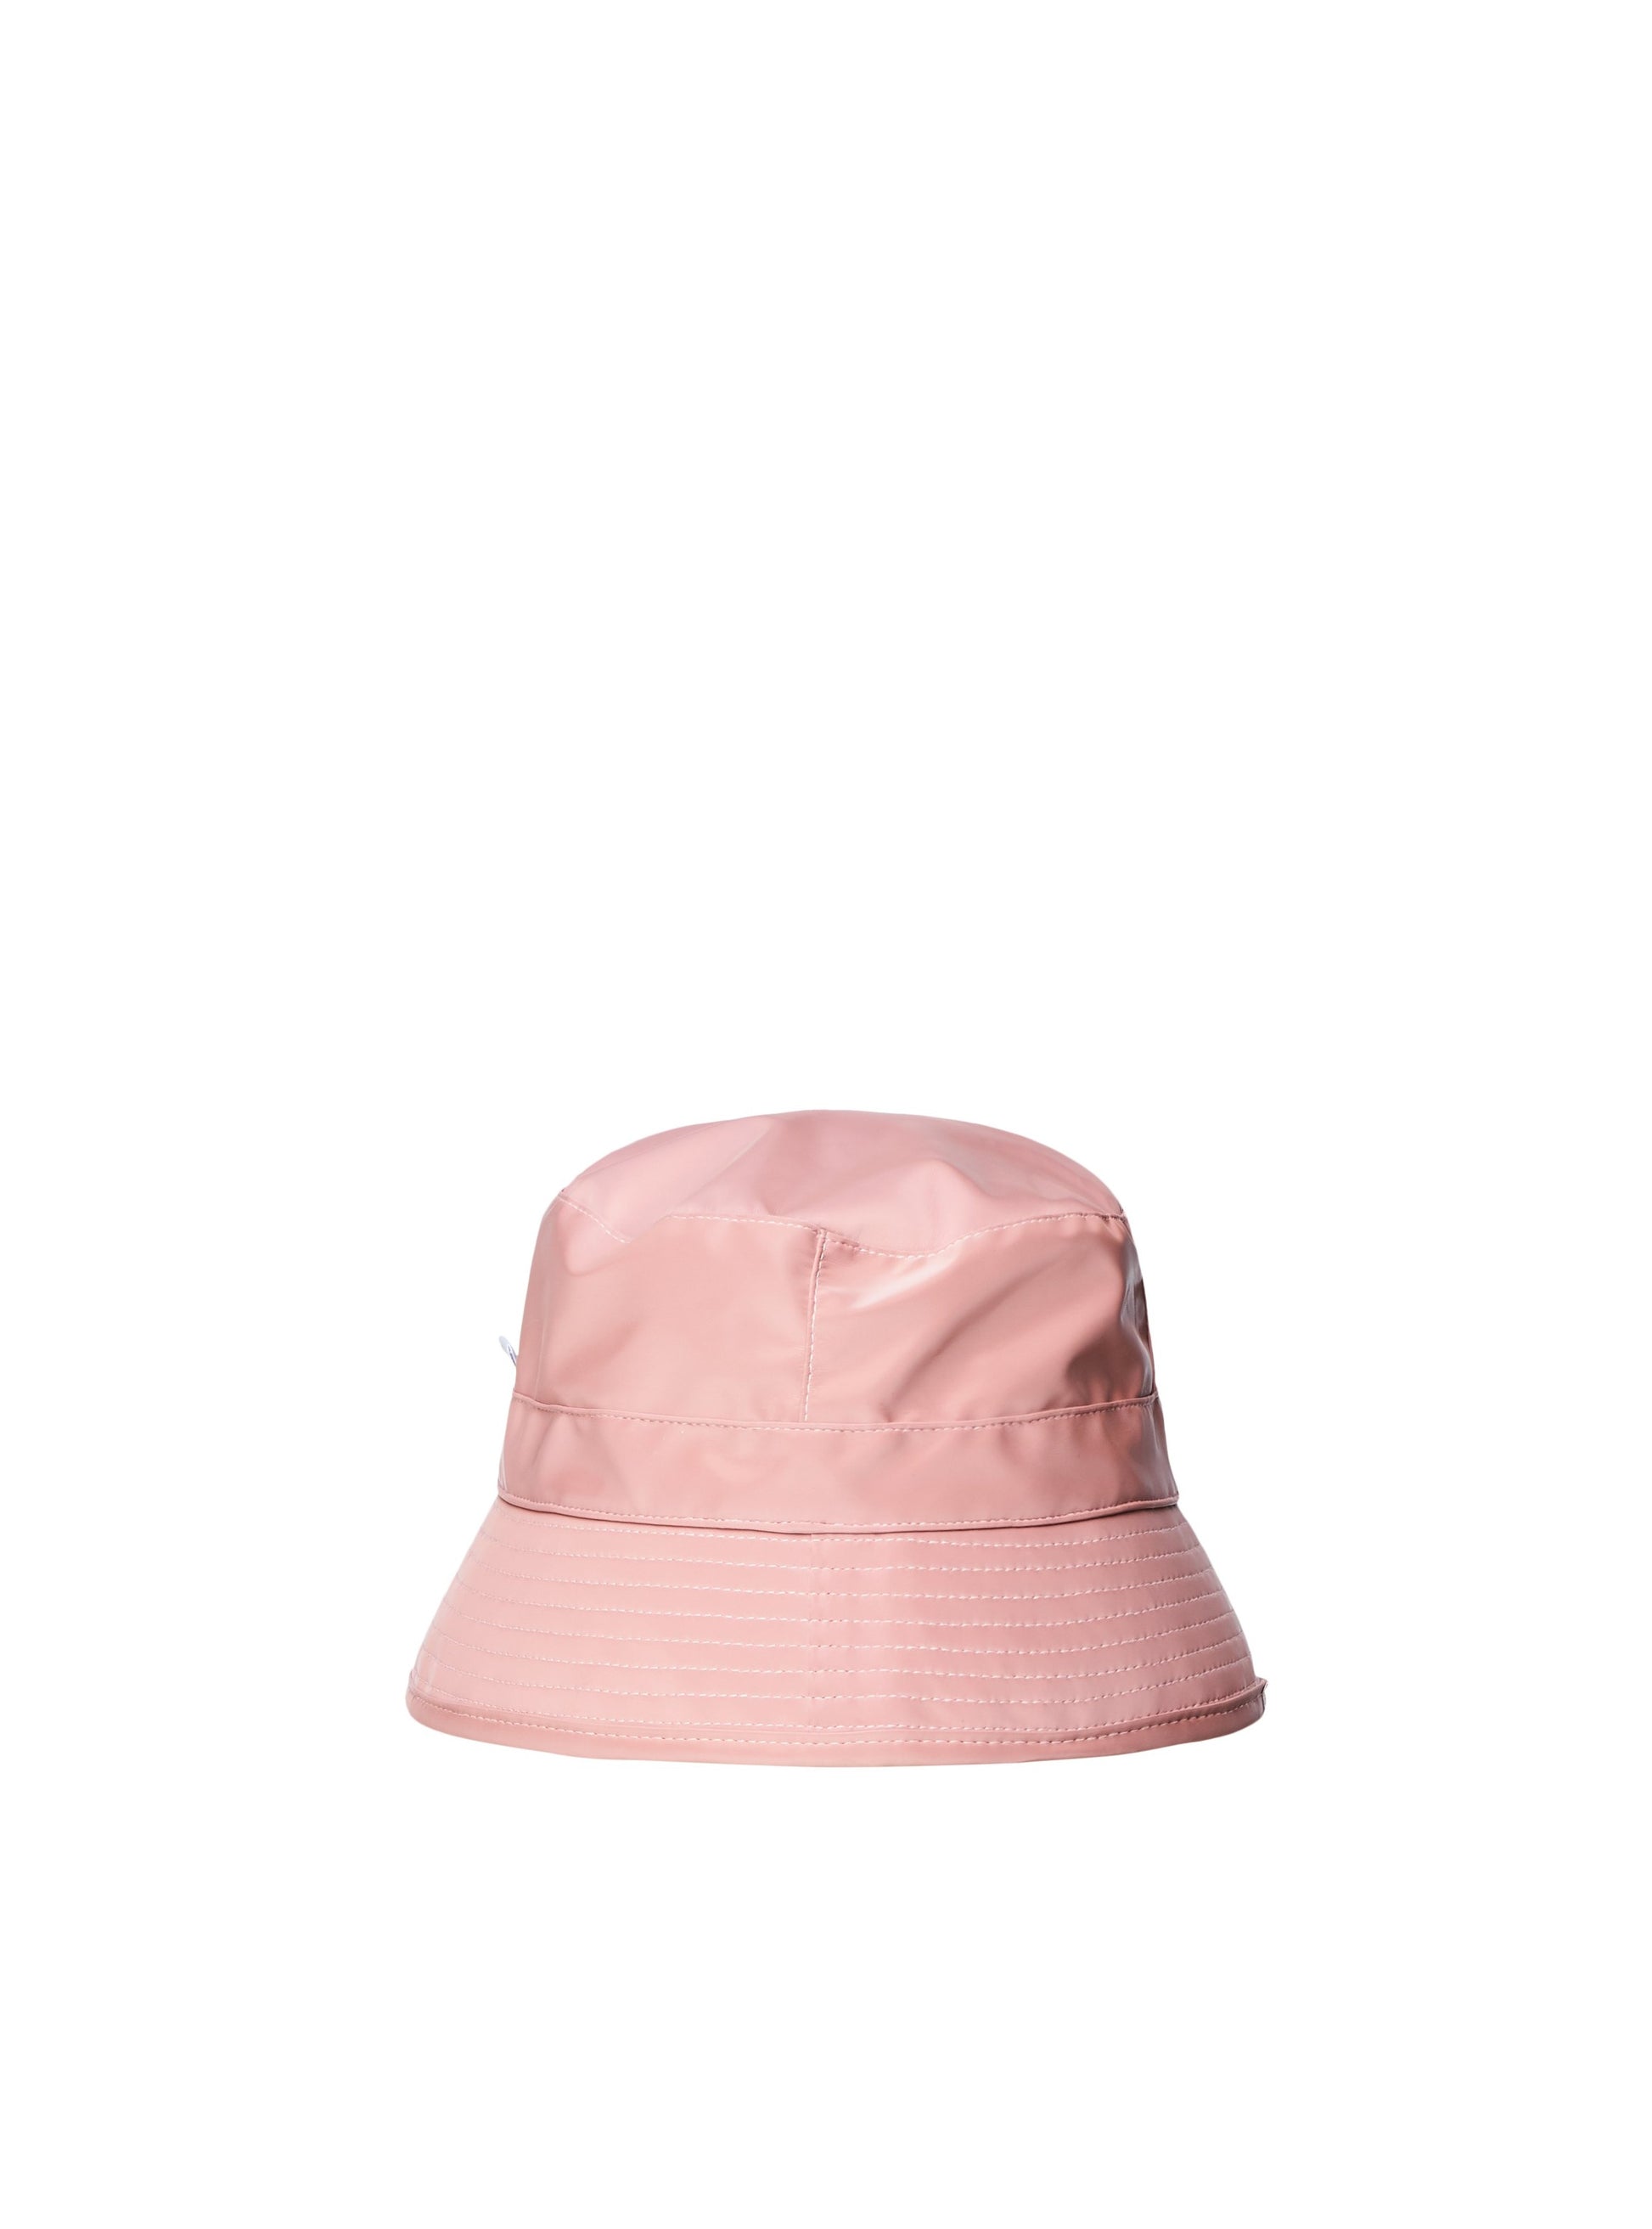 Rains Blush Pink 'Bucket Hat' - Jessimara